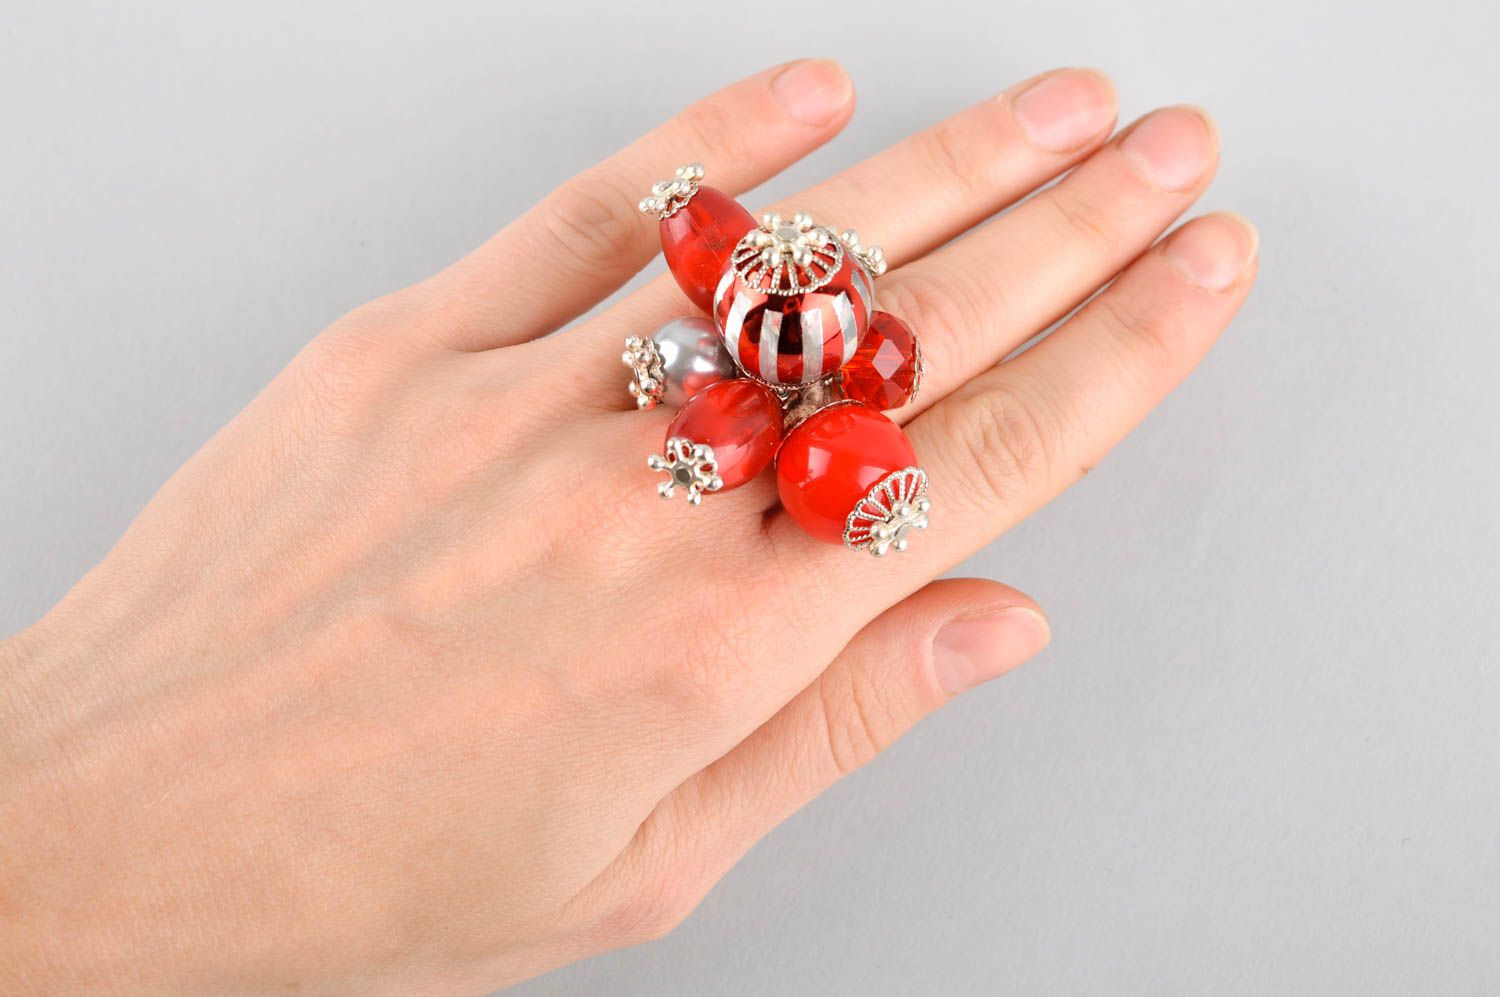 Кольцо ручной работы кольцо из бусин и кристаллов модное кольцо стильное фото 5